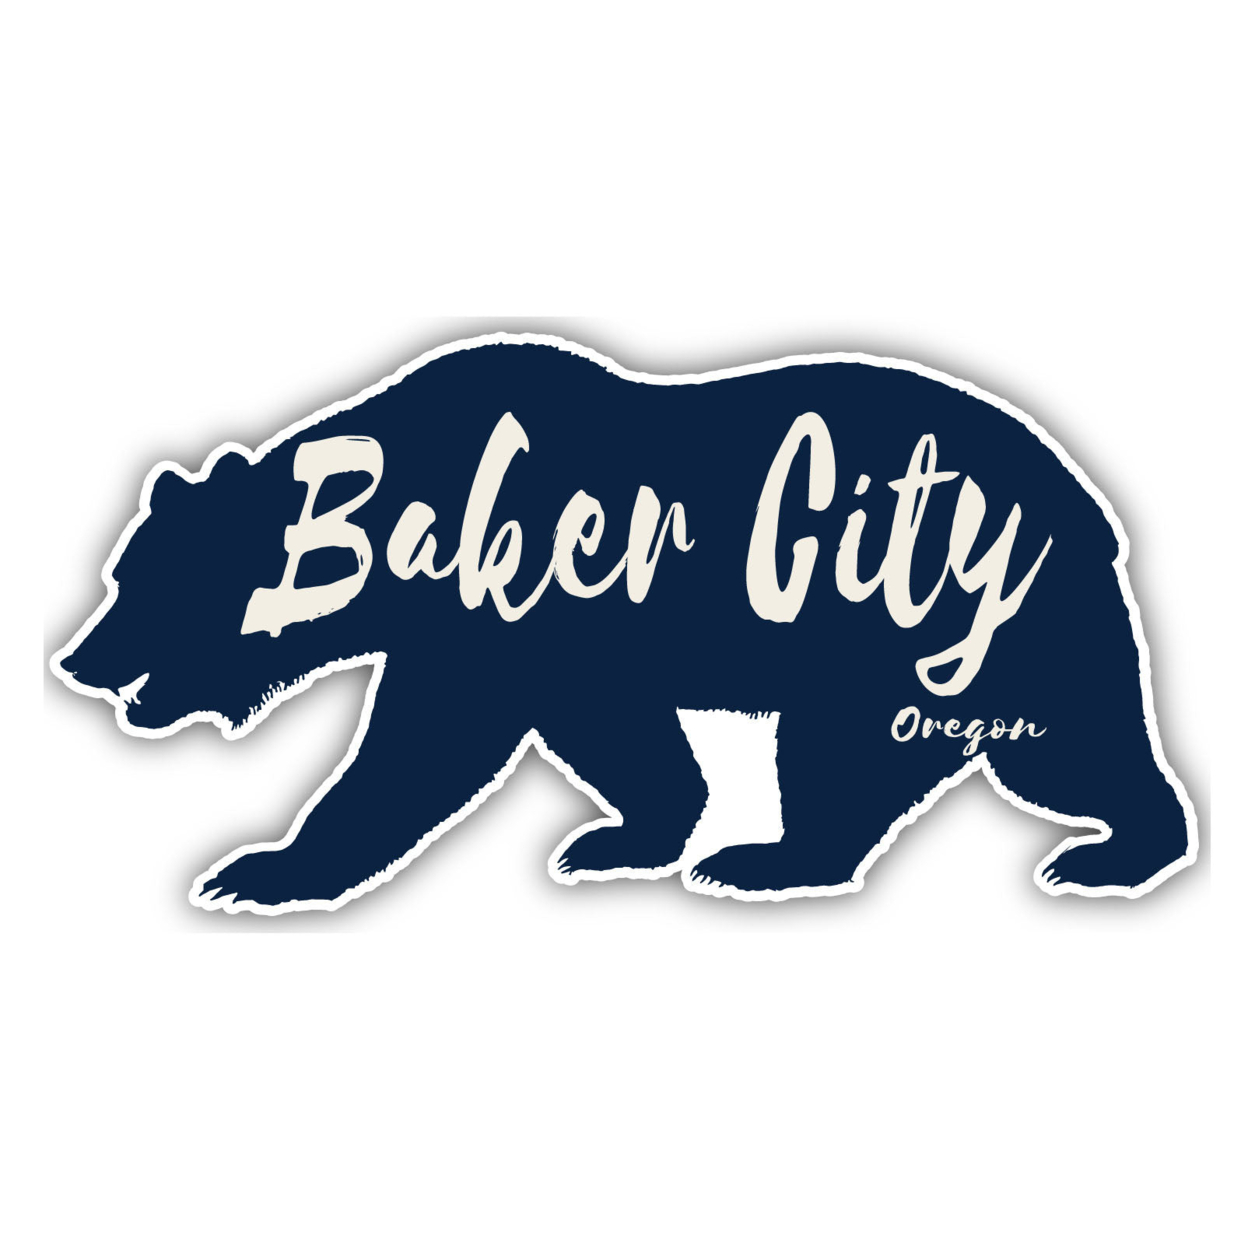 Baker City Oregon Souvenir Decorative Stickers (Choose Theme And Size) - Single Unit, 4-Inch, Tent